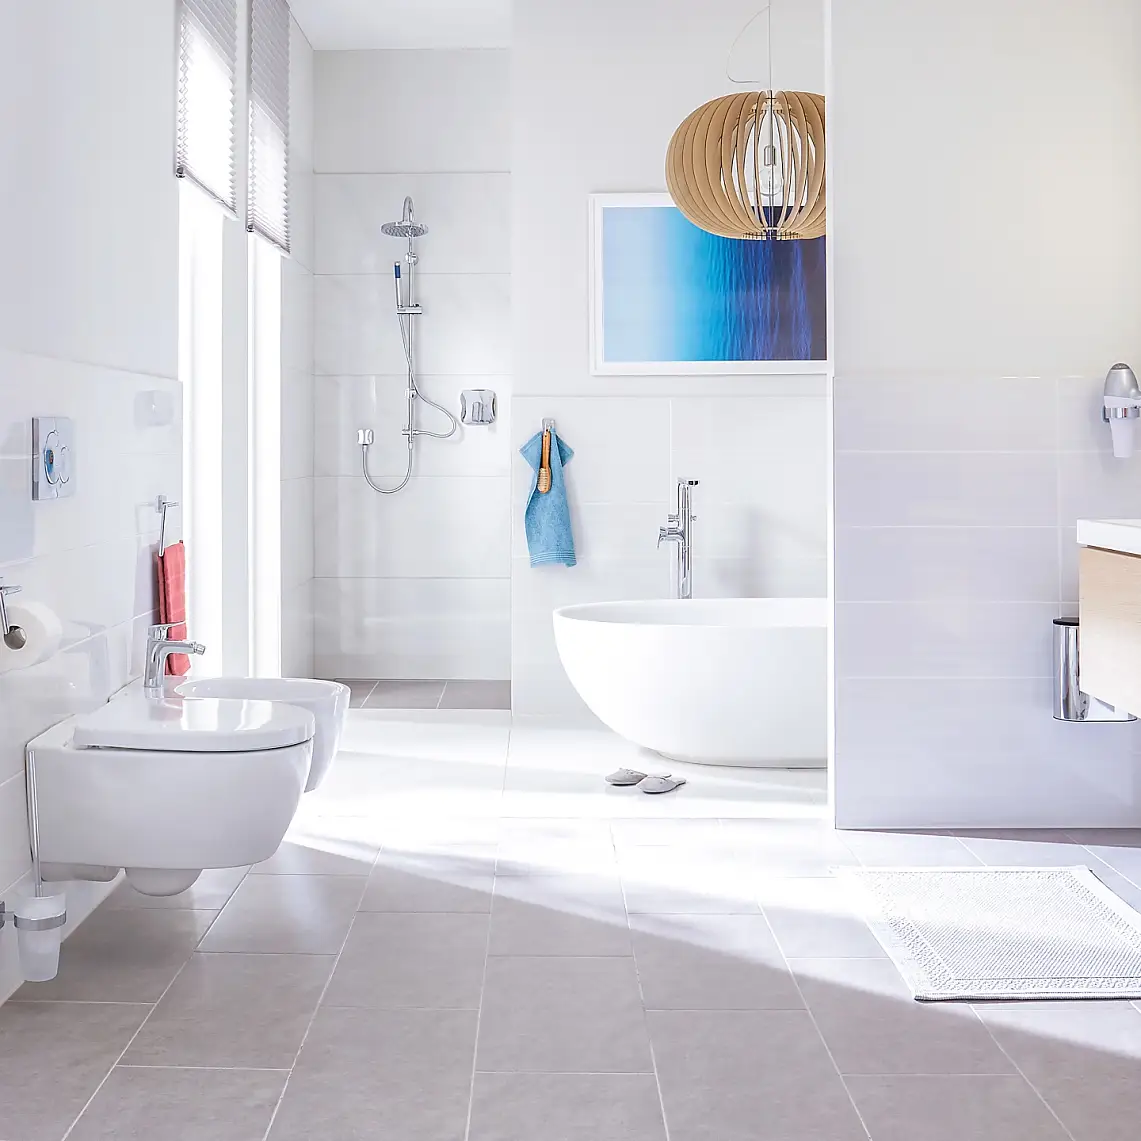 O design alia-se à perfeita elegância para casas de banho de luxo.